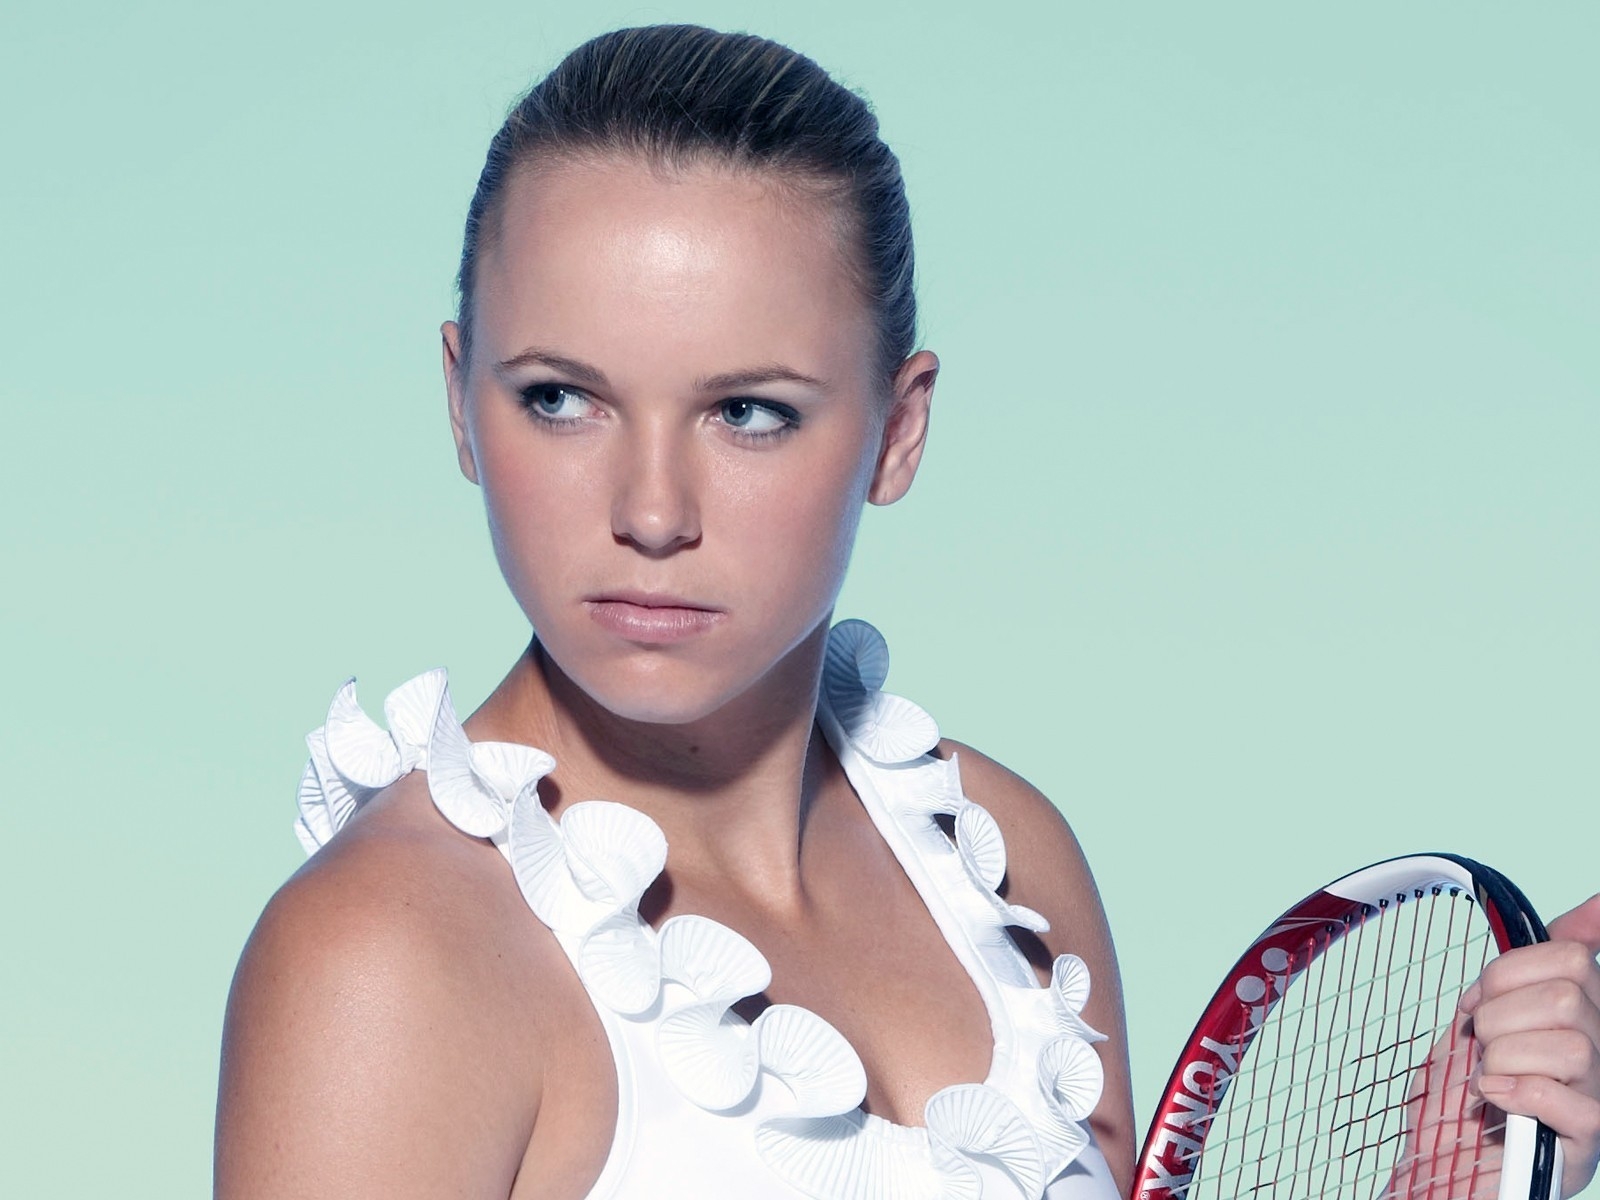 Caroline Wozniacki Tennis Player for 1600 x 1200 resolution